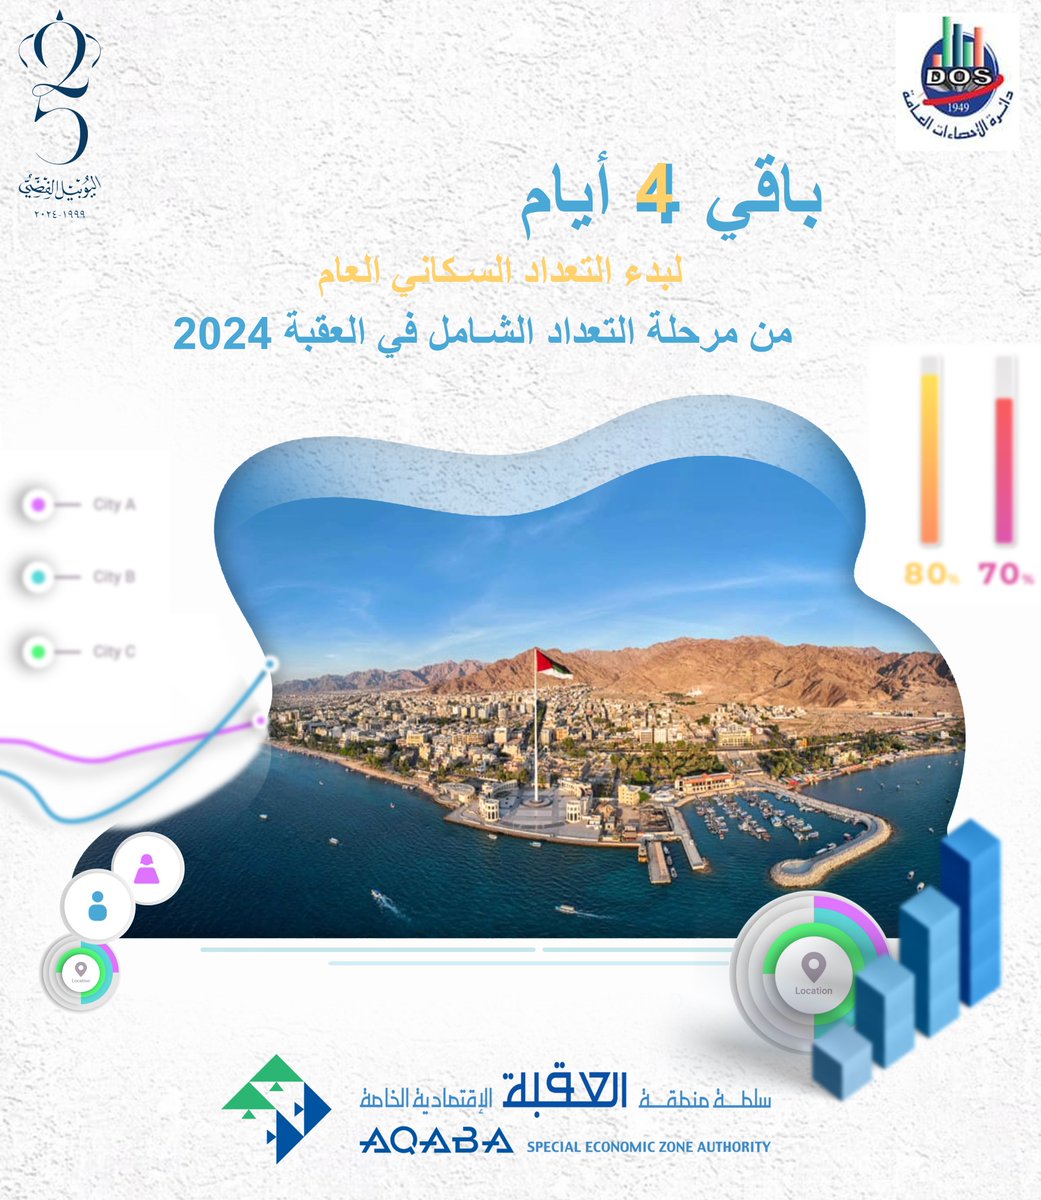 باقي 4 أيام لبدء التعداد السكاني العام في المرحلة الثالثة للتعداد الشامل في محافظة العقبة